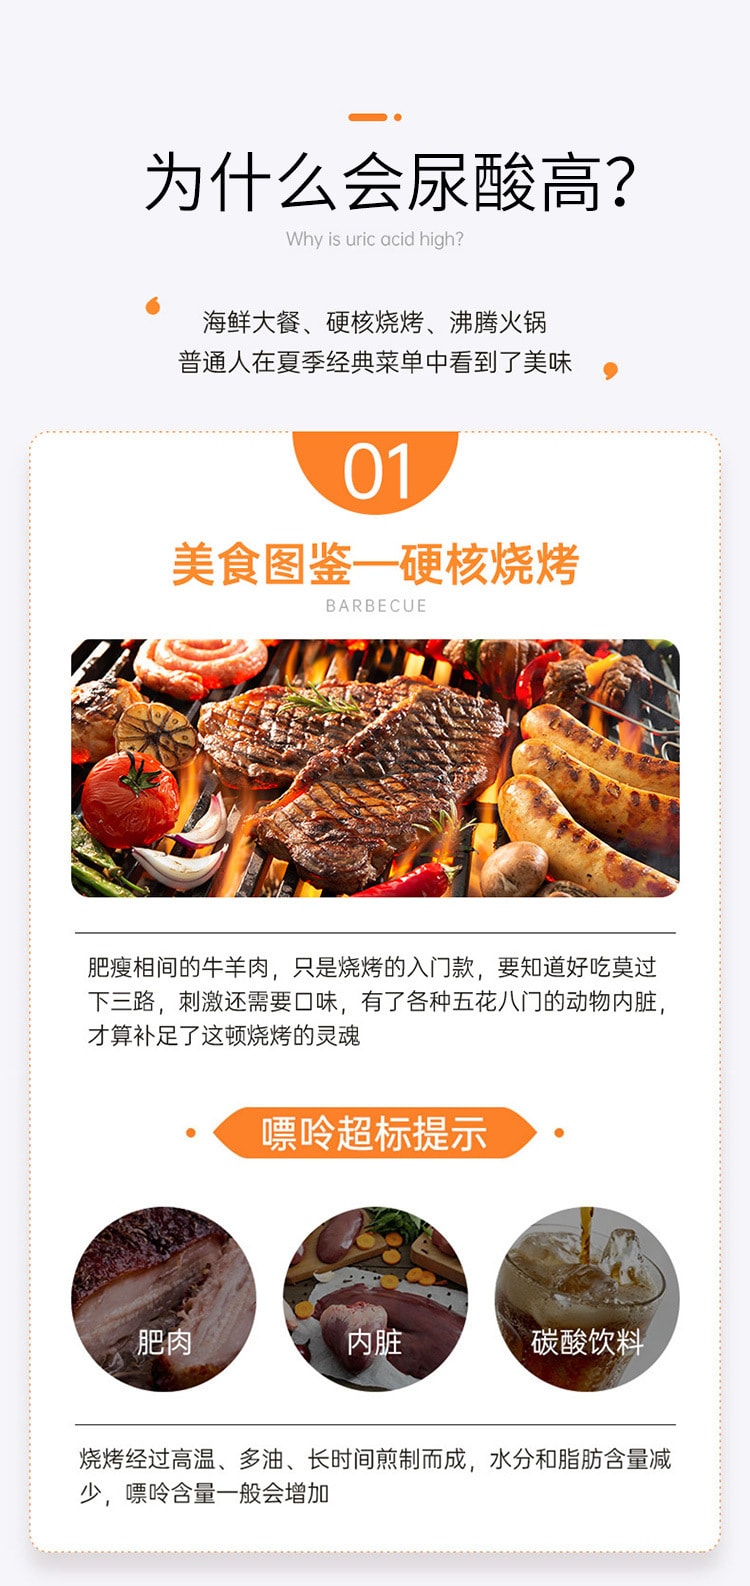 【中國直郵】輕現 排酸靈 菜籽菊苣子壓片糖果 根源修護 尿酸值速降16.8g (0.7gx12X2)